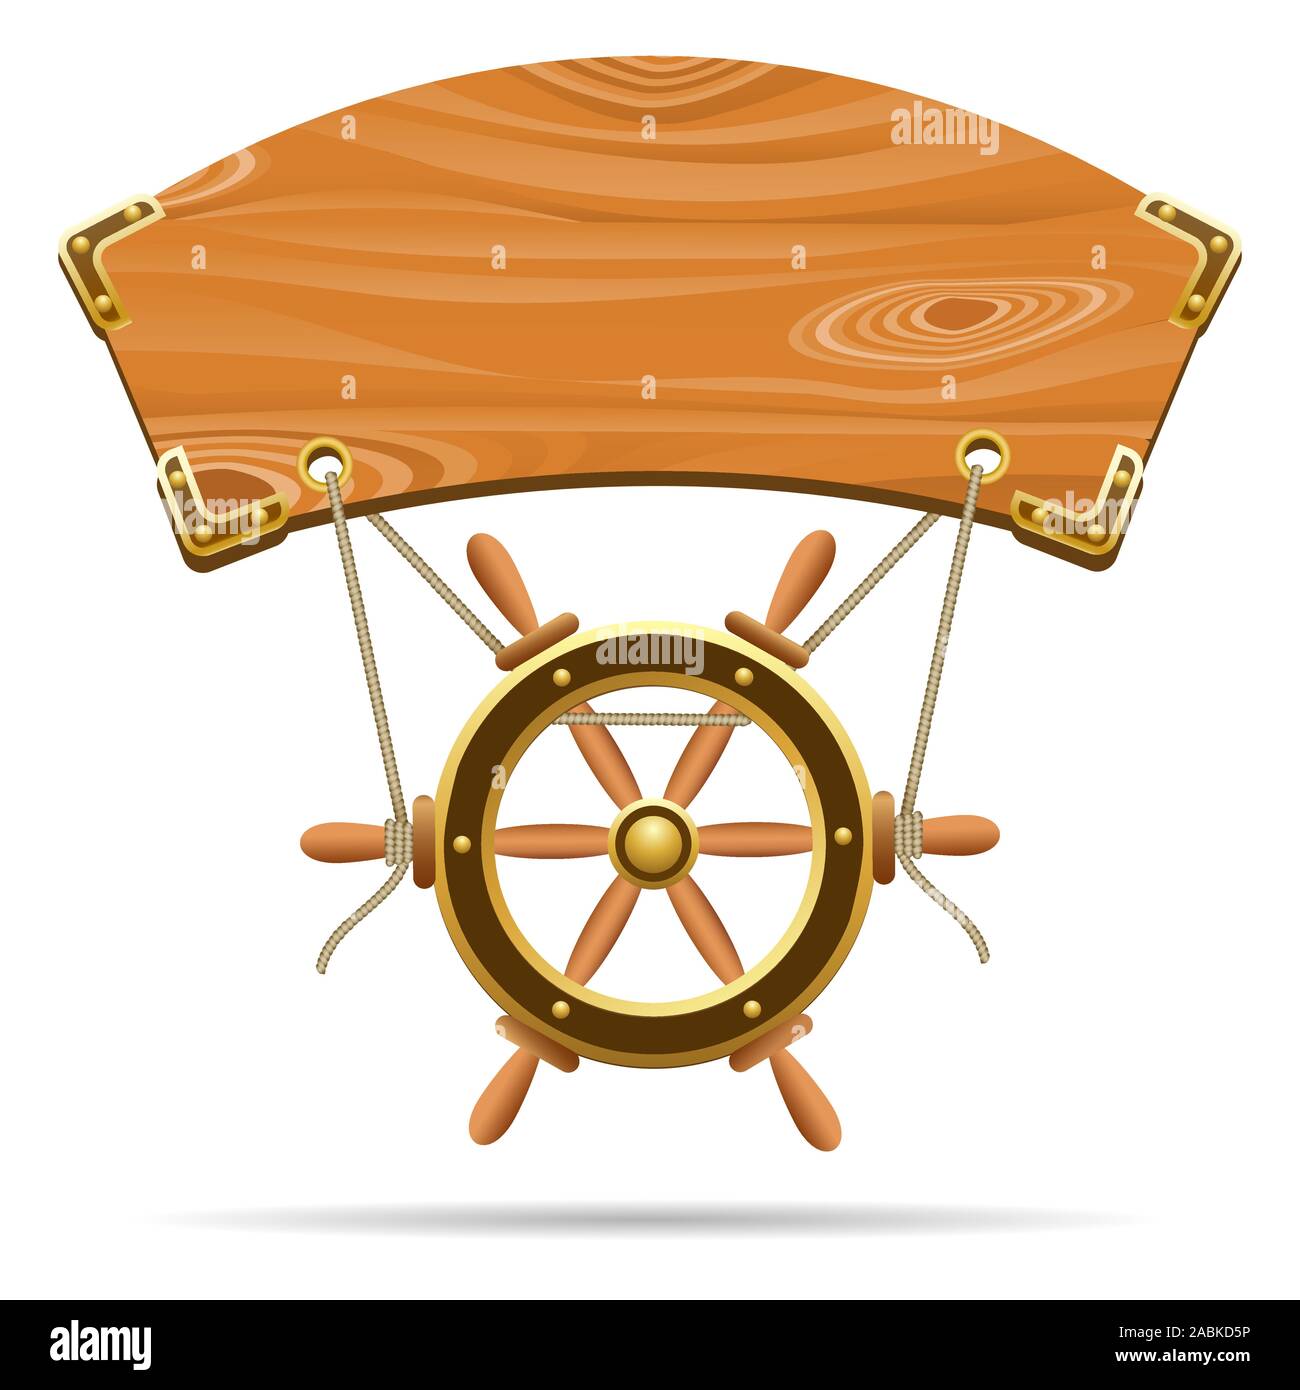 Cartel de madera con el volante en una cuerda dibujado en estilo de dibujos animados. Ilustración vectorial. Ilustración del Vector